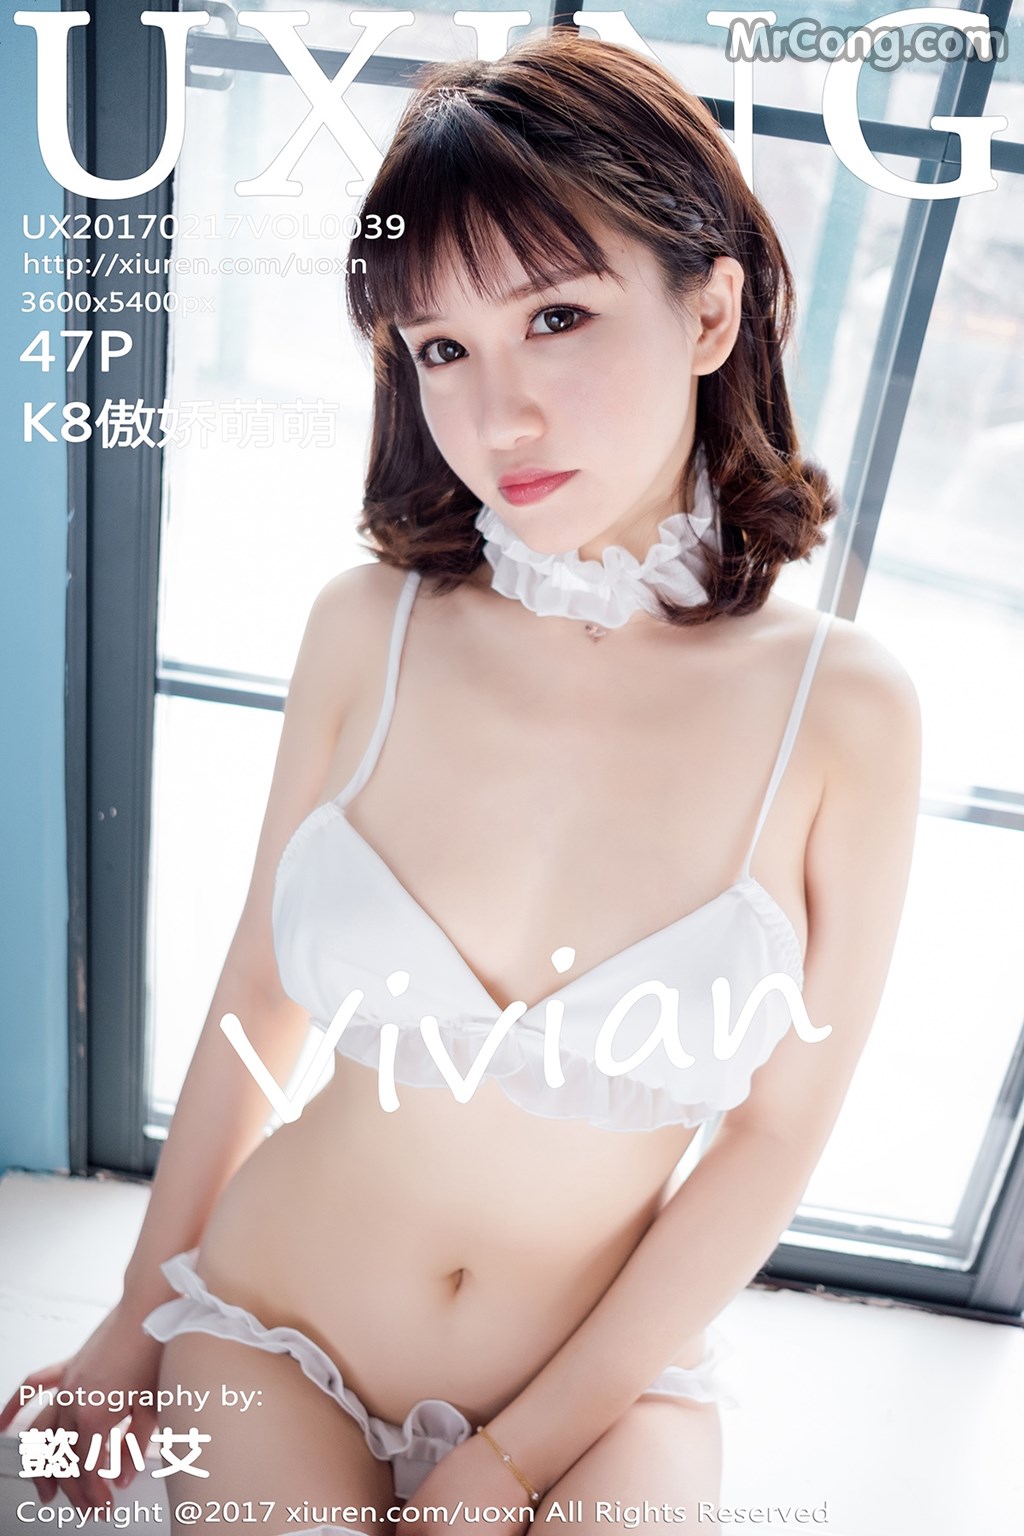 UXING Vol.039: Model Aojiao Meng Meng (K8 傲 娇 萌萌 Vivian) (48 photos)